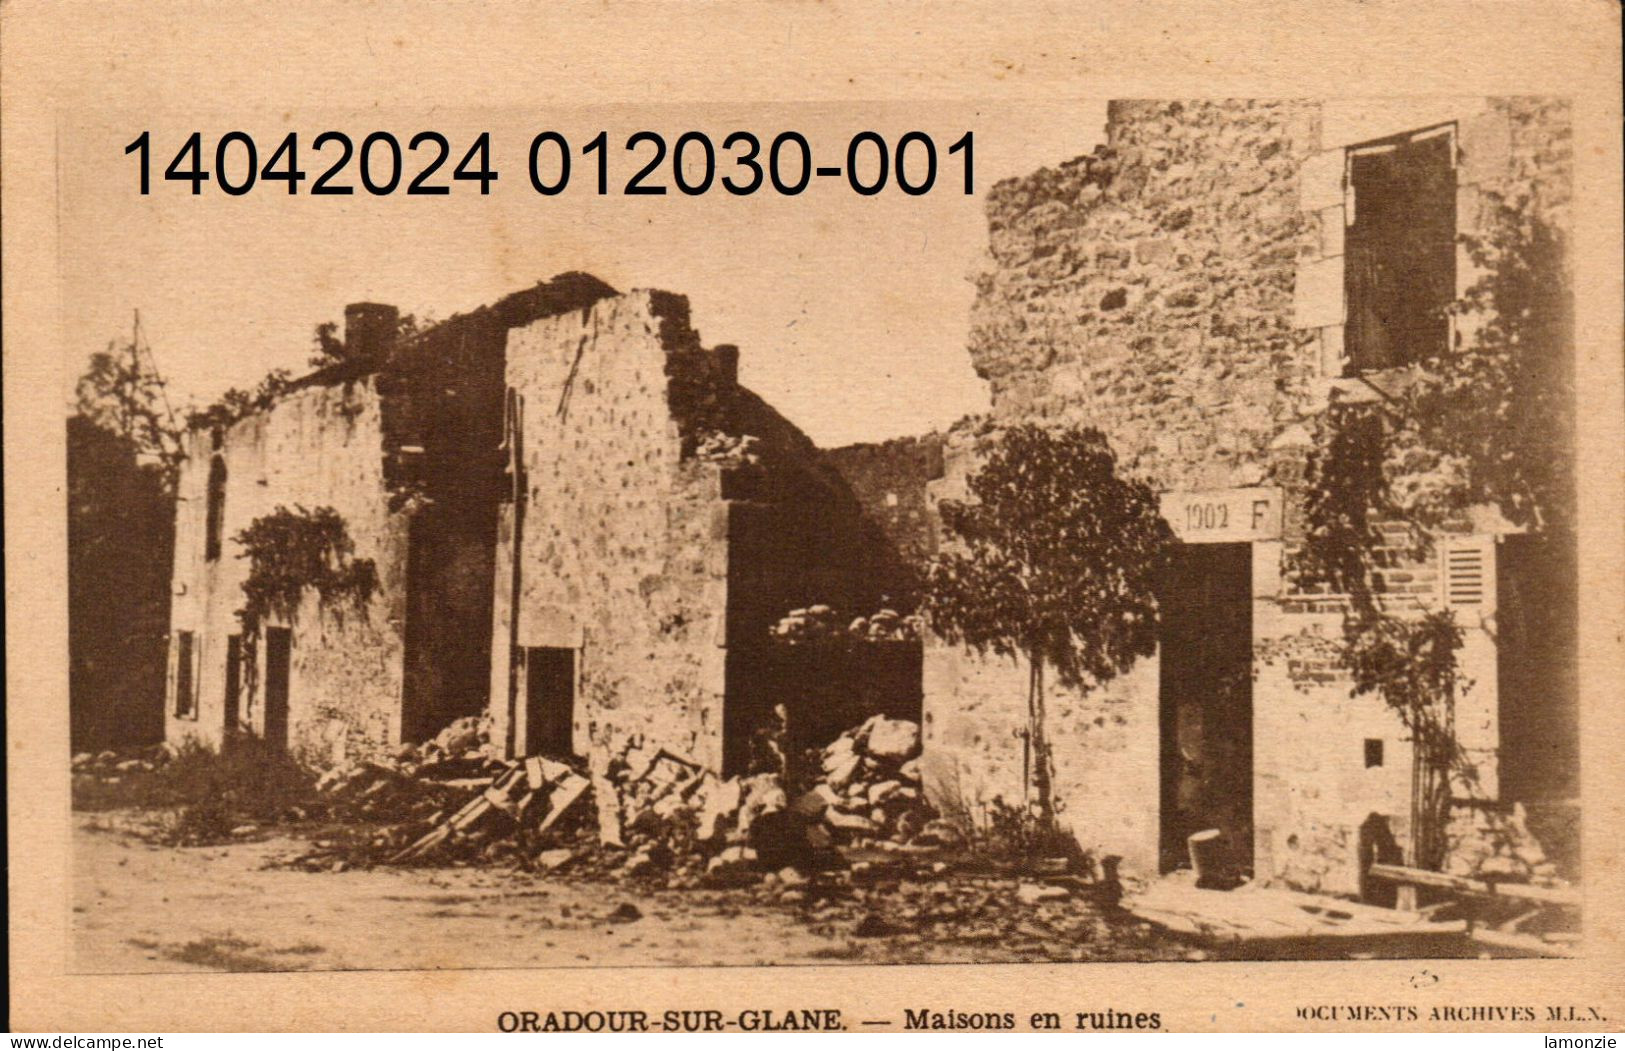 ORADOUR-sur-GLANE. 7 cpa sépia  sur le massacre d'Oradour le 10 juin 1944. (scans recto-verso)